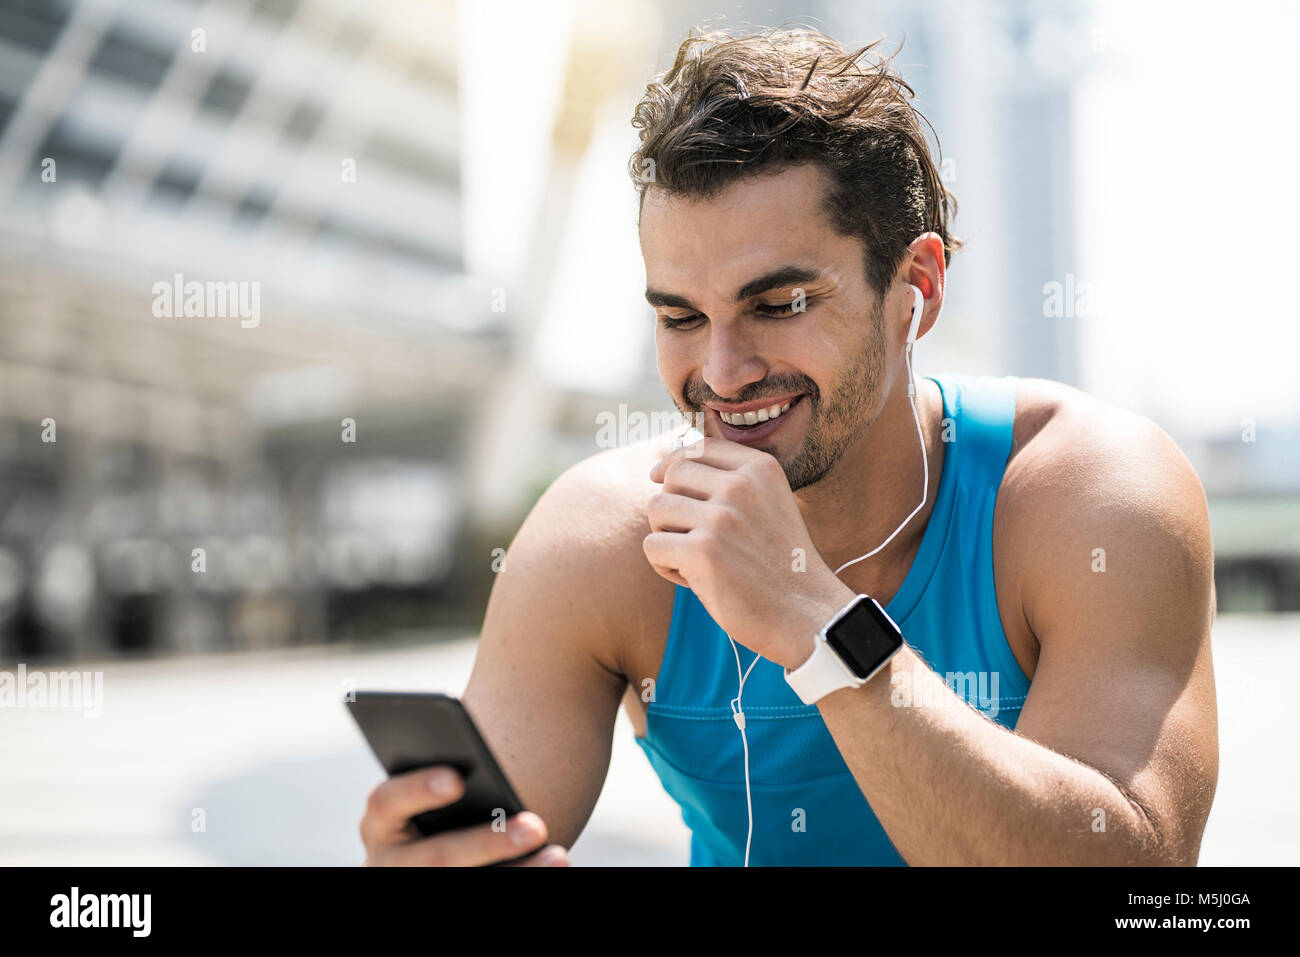 Runner wearing earphones, consultation des messages sur son smartphone Banque D'Images